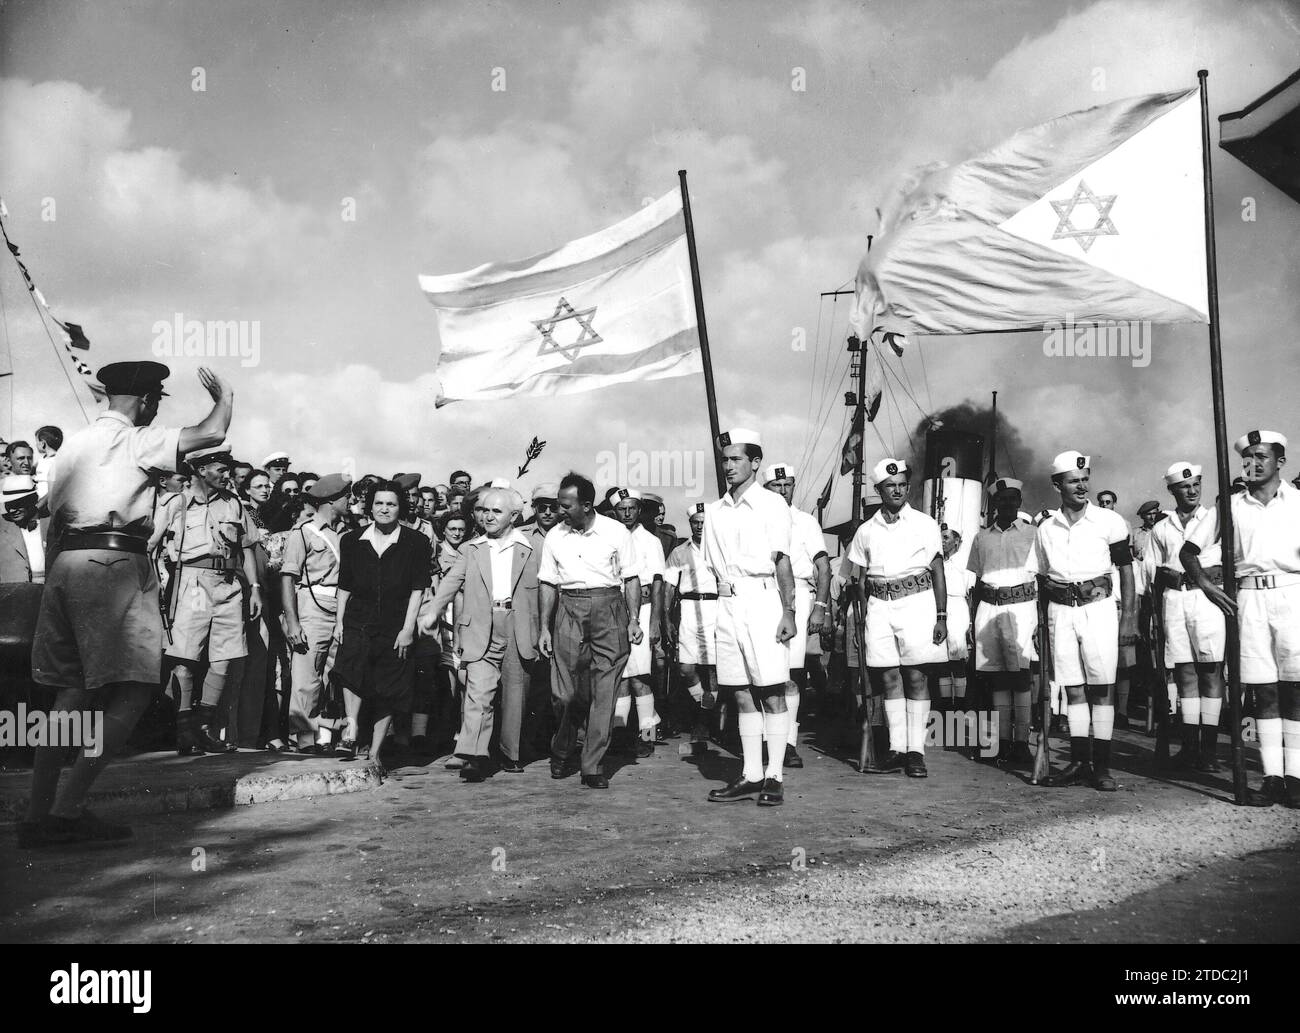 12/31/1947. Der israelische Premierminister (mit einem Pfeil gezeigt) trifft mit seiner Frau am Haifa-Dock ein, um sich von den letzten britischen Soldaten zu verabschieden, die in Palästina verbleiben. - Ungefähres Datum. Quelle: Album / Archivo ABC / Ortiz Stockfoto